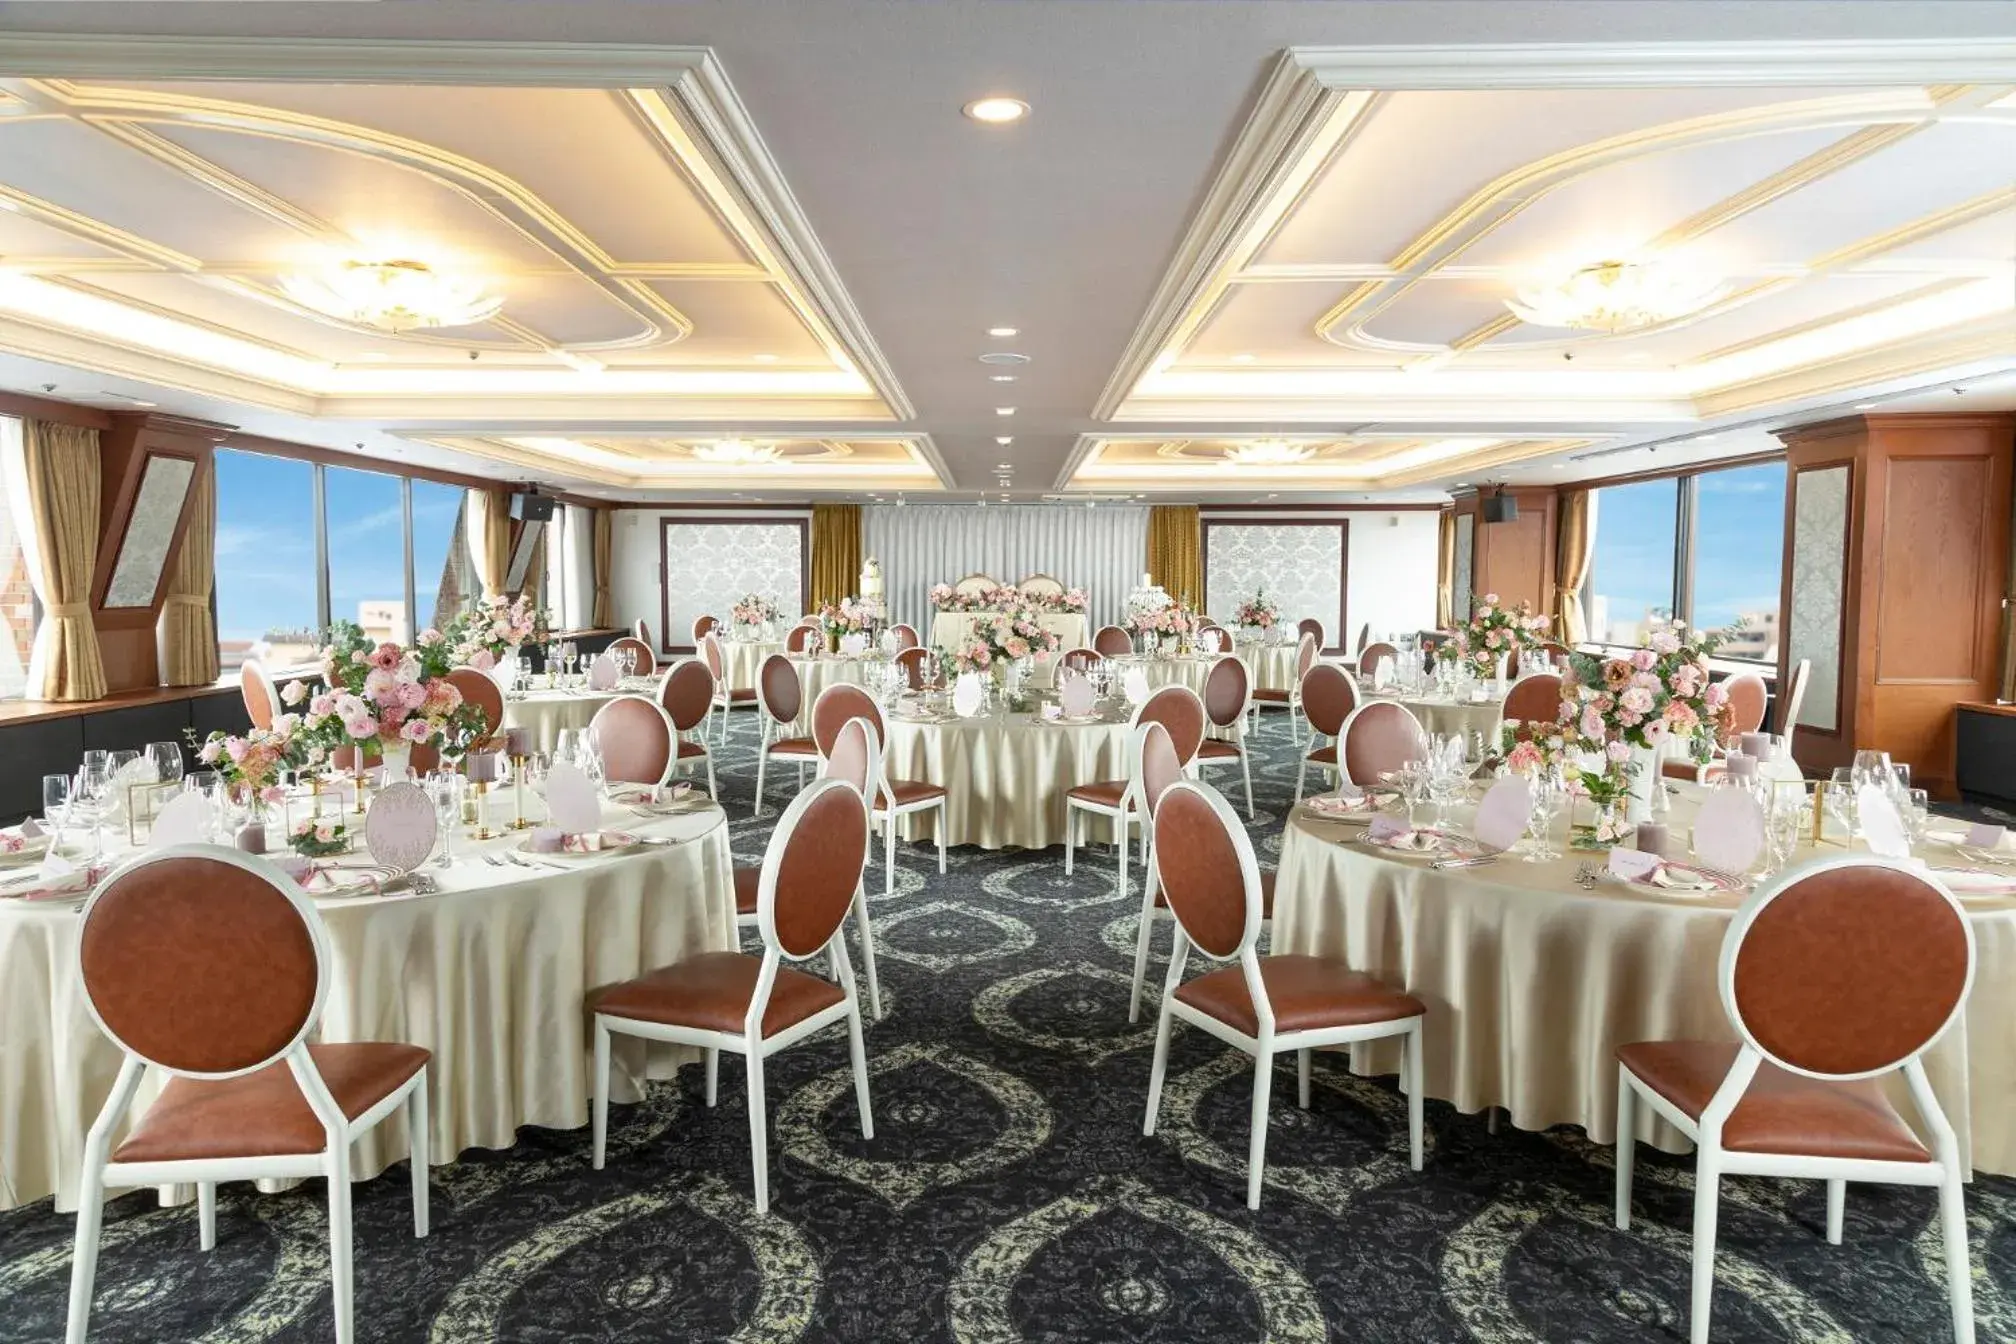 Banquet/Function facilities, Banquet Facilities in Hotel Higashinihon Morioka